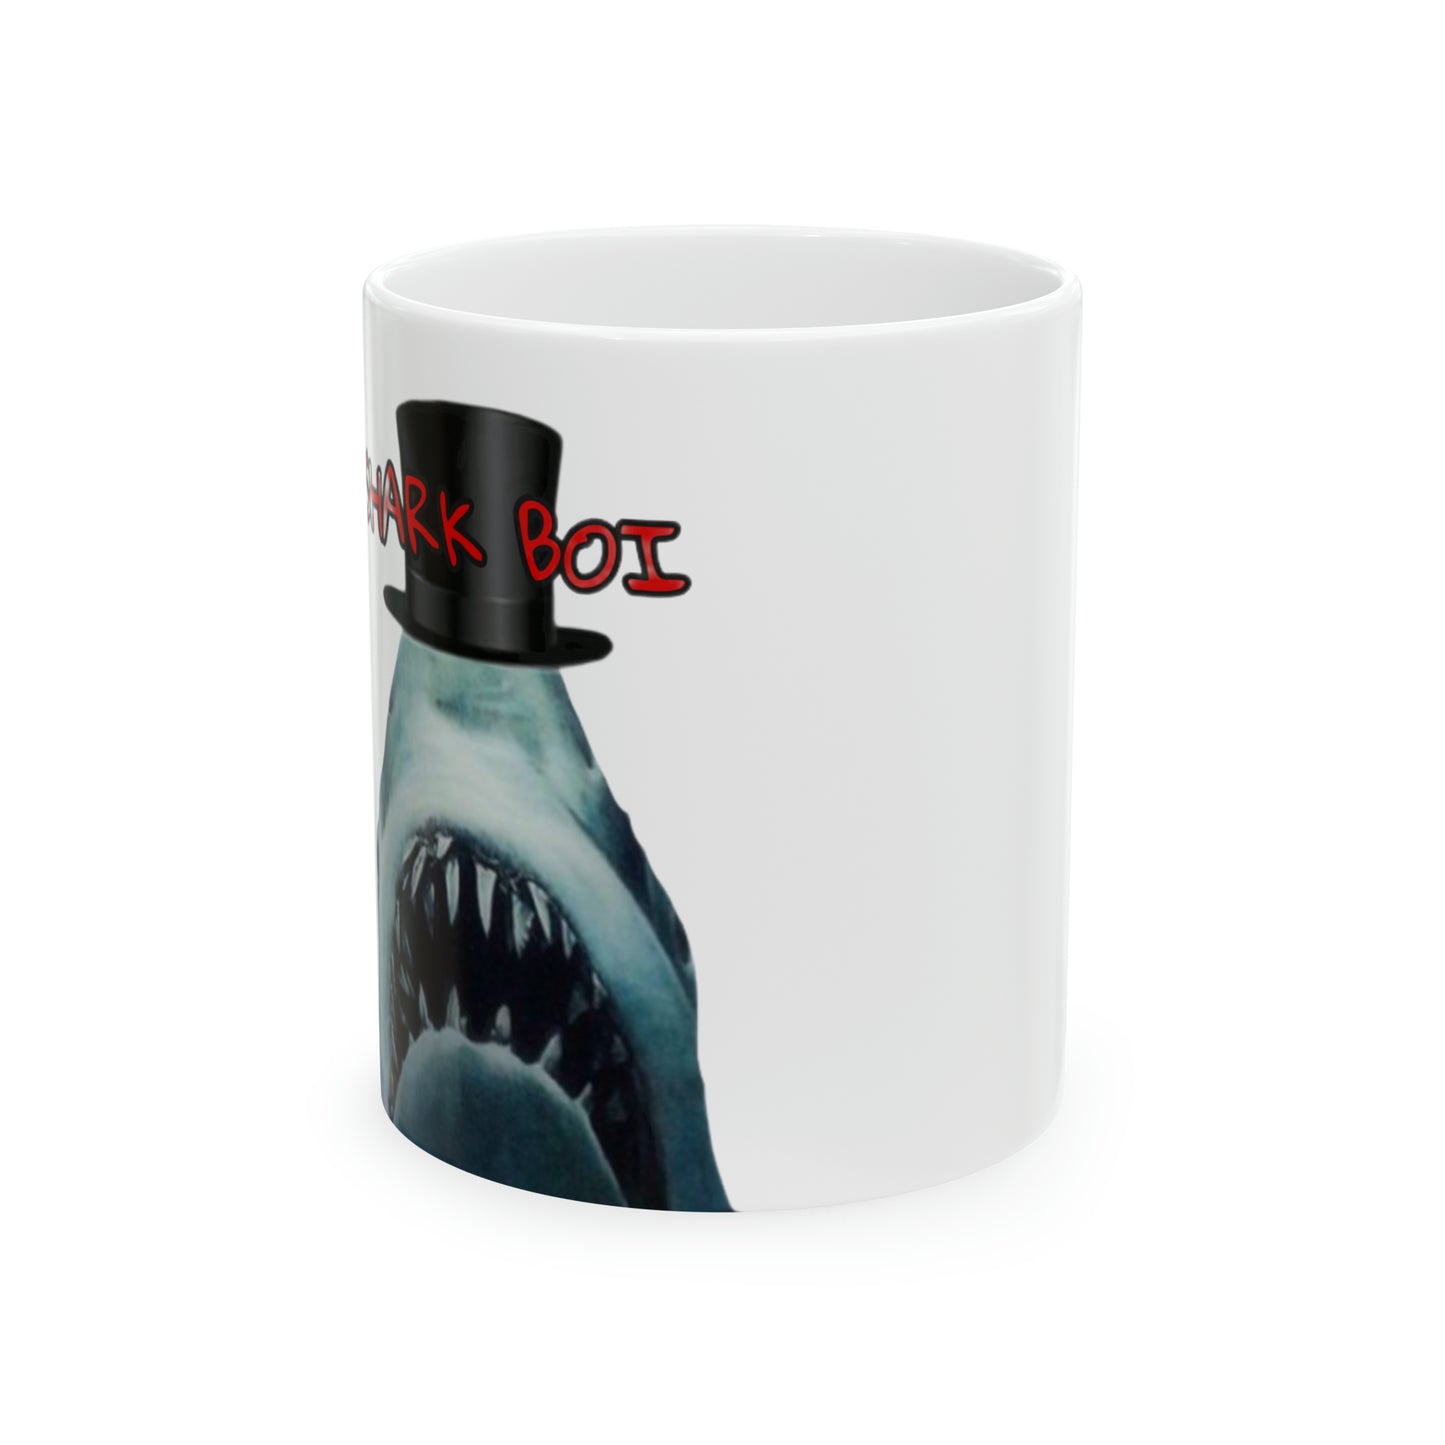 Sharkboi Ceramic Mug, 11oz